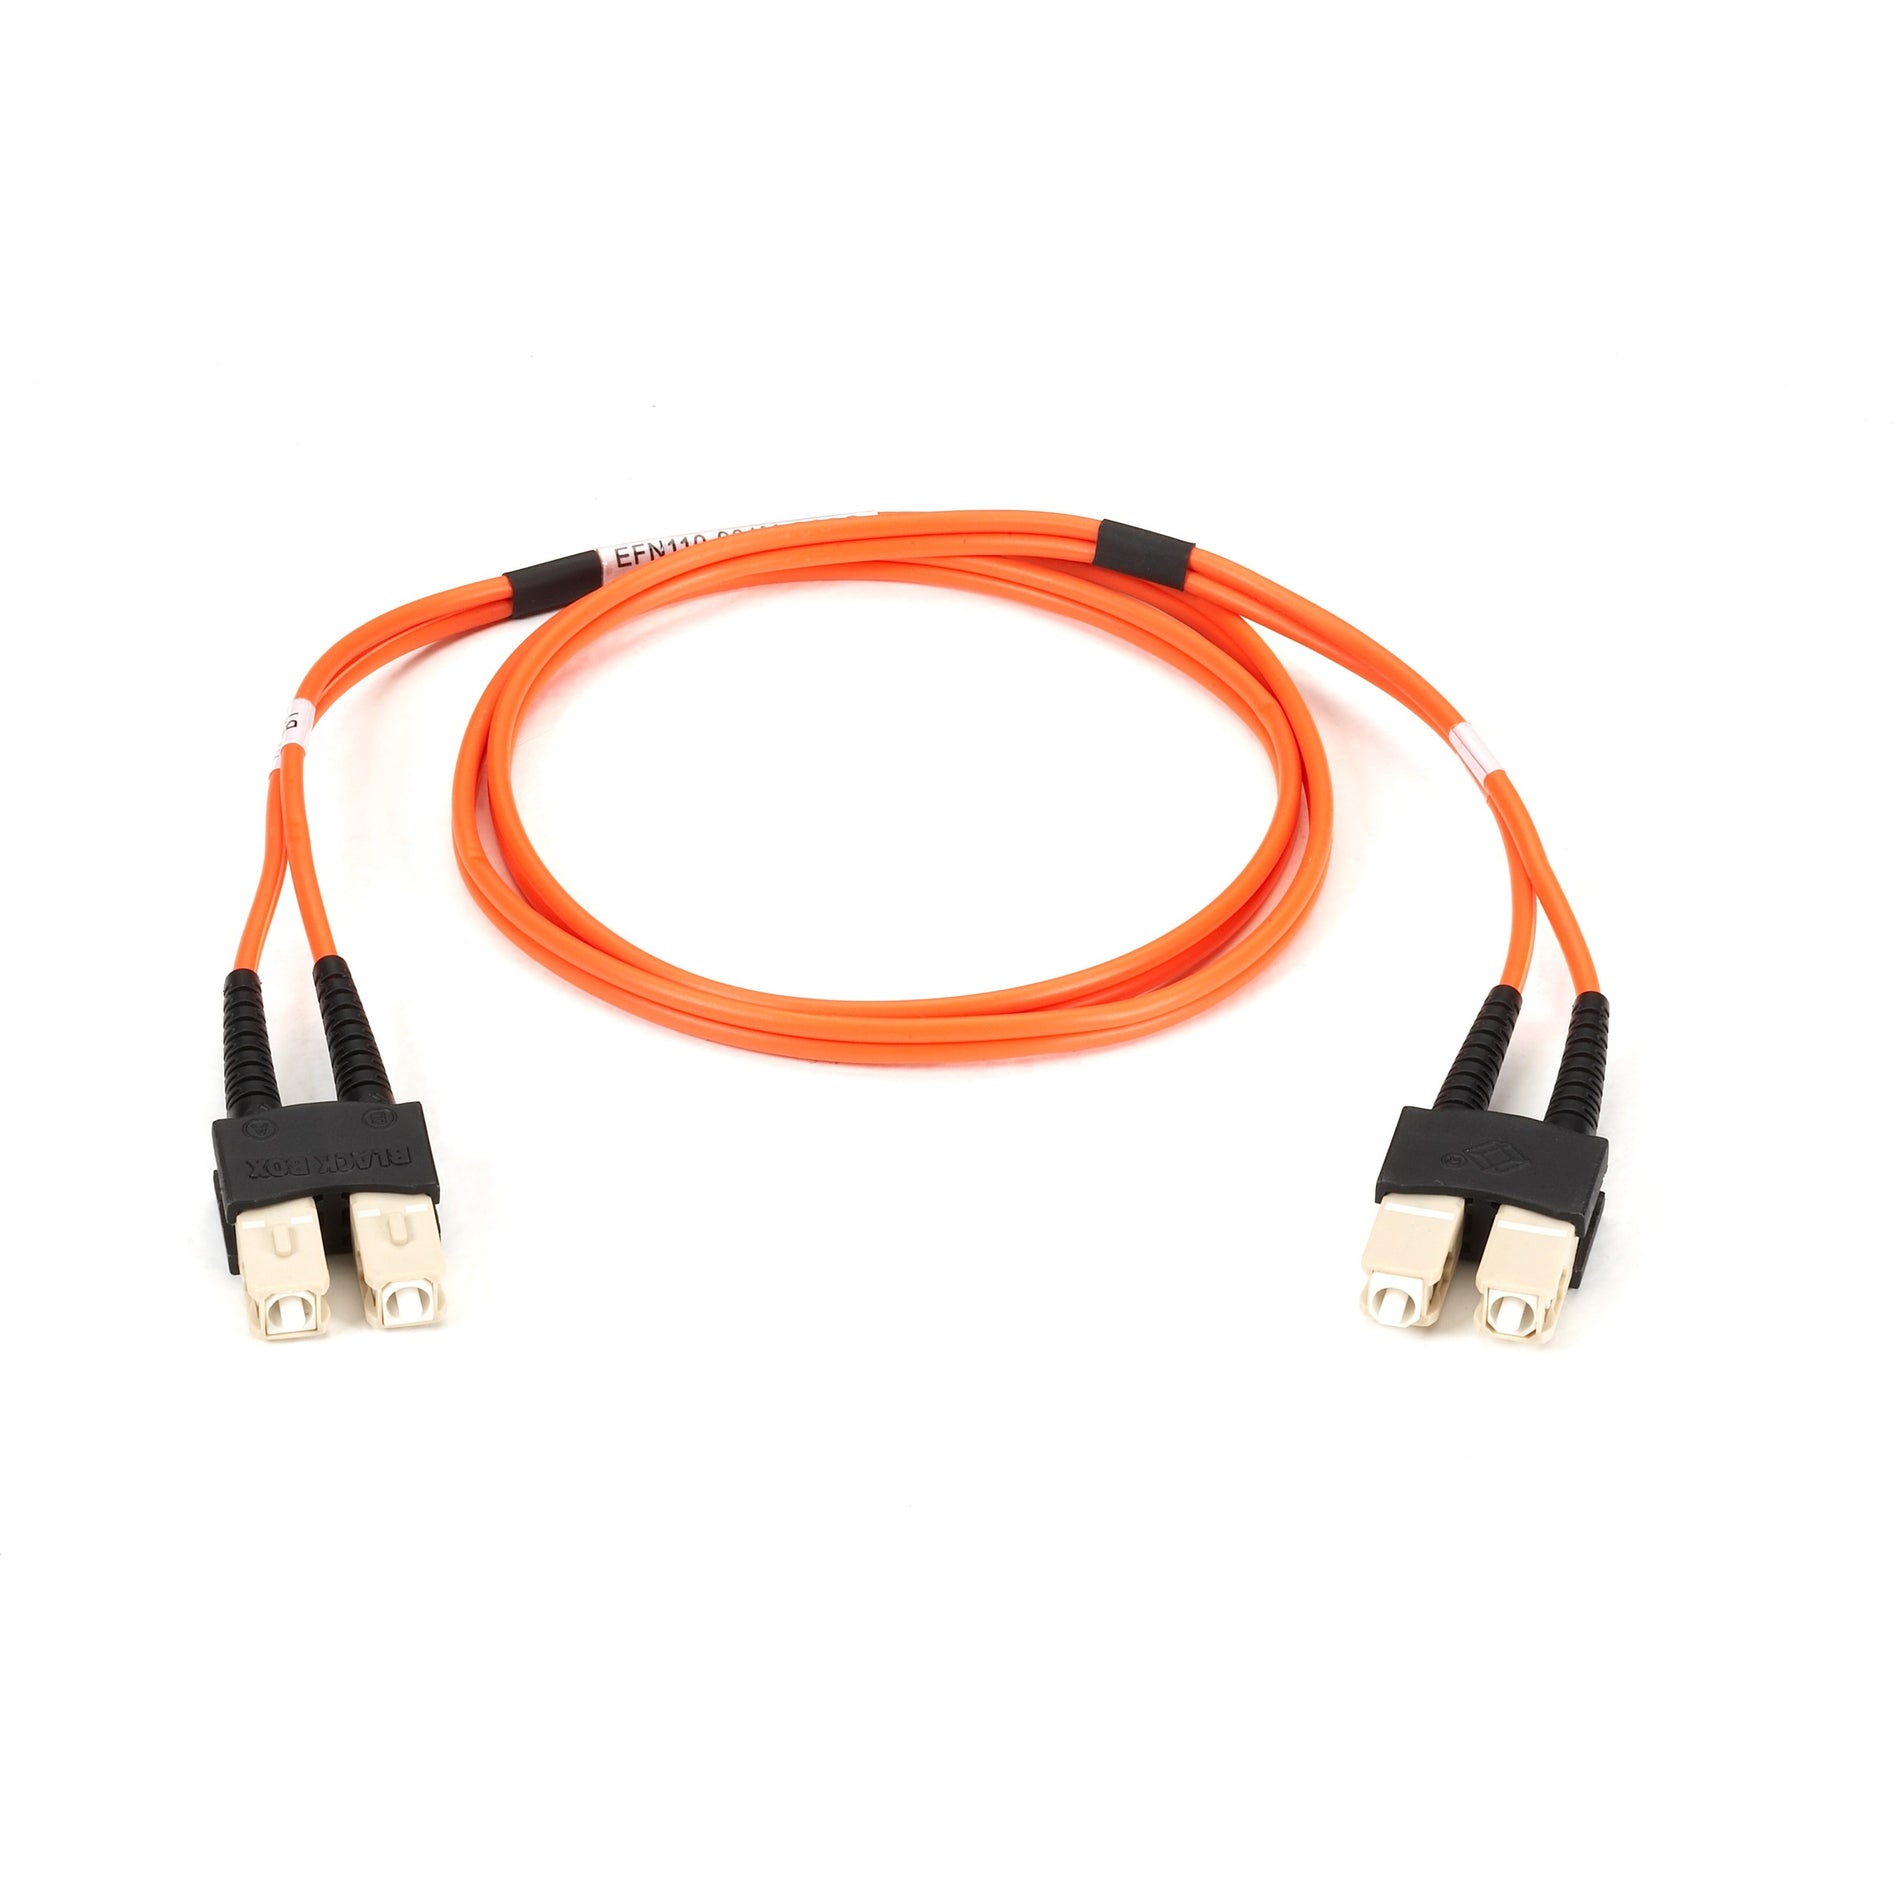 Black Box EFN110-001M-SCSC Fiber Optic Duplex Patch Network Cable, Multi-mode, 3.20 ft, Orange PVC Jacket